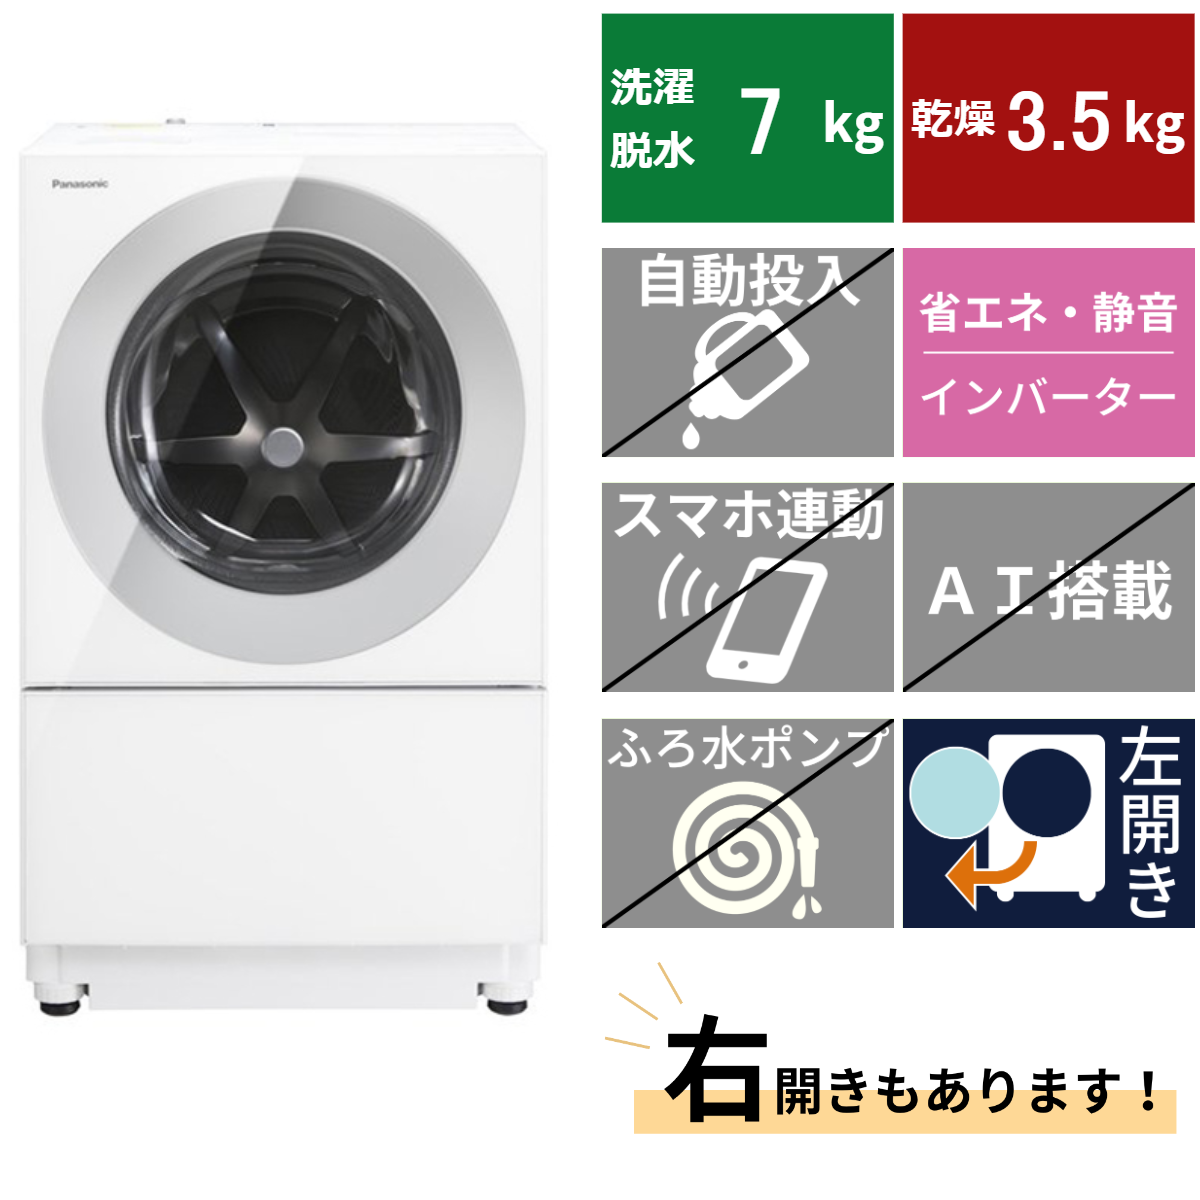 ドラム式洗濯機NA-VG770 (洗濯・脱水7kg、乾燥3.5kg) – De-Life